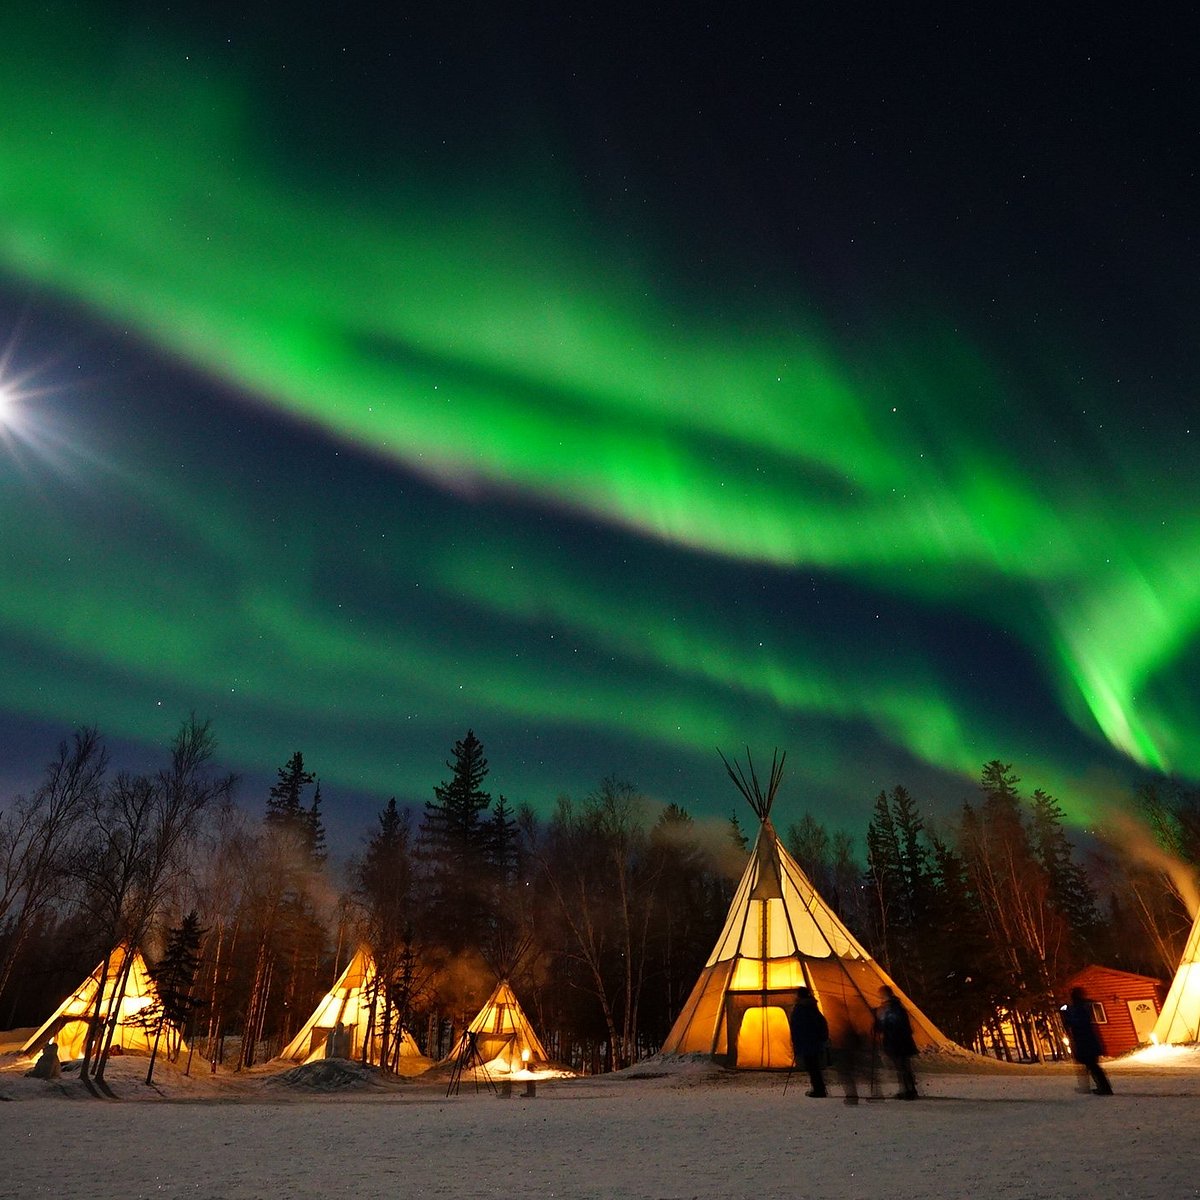 Địa điểm ngắm cực quang đẹp nhất: Canada, Yellowknife (Ảnh: Internet)